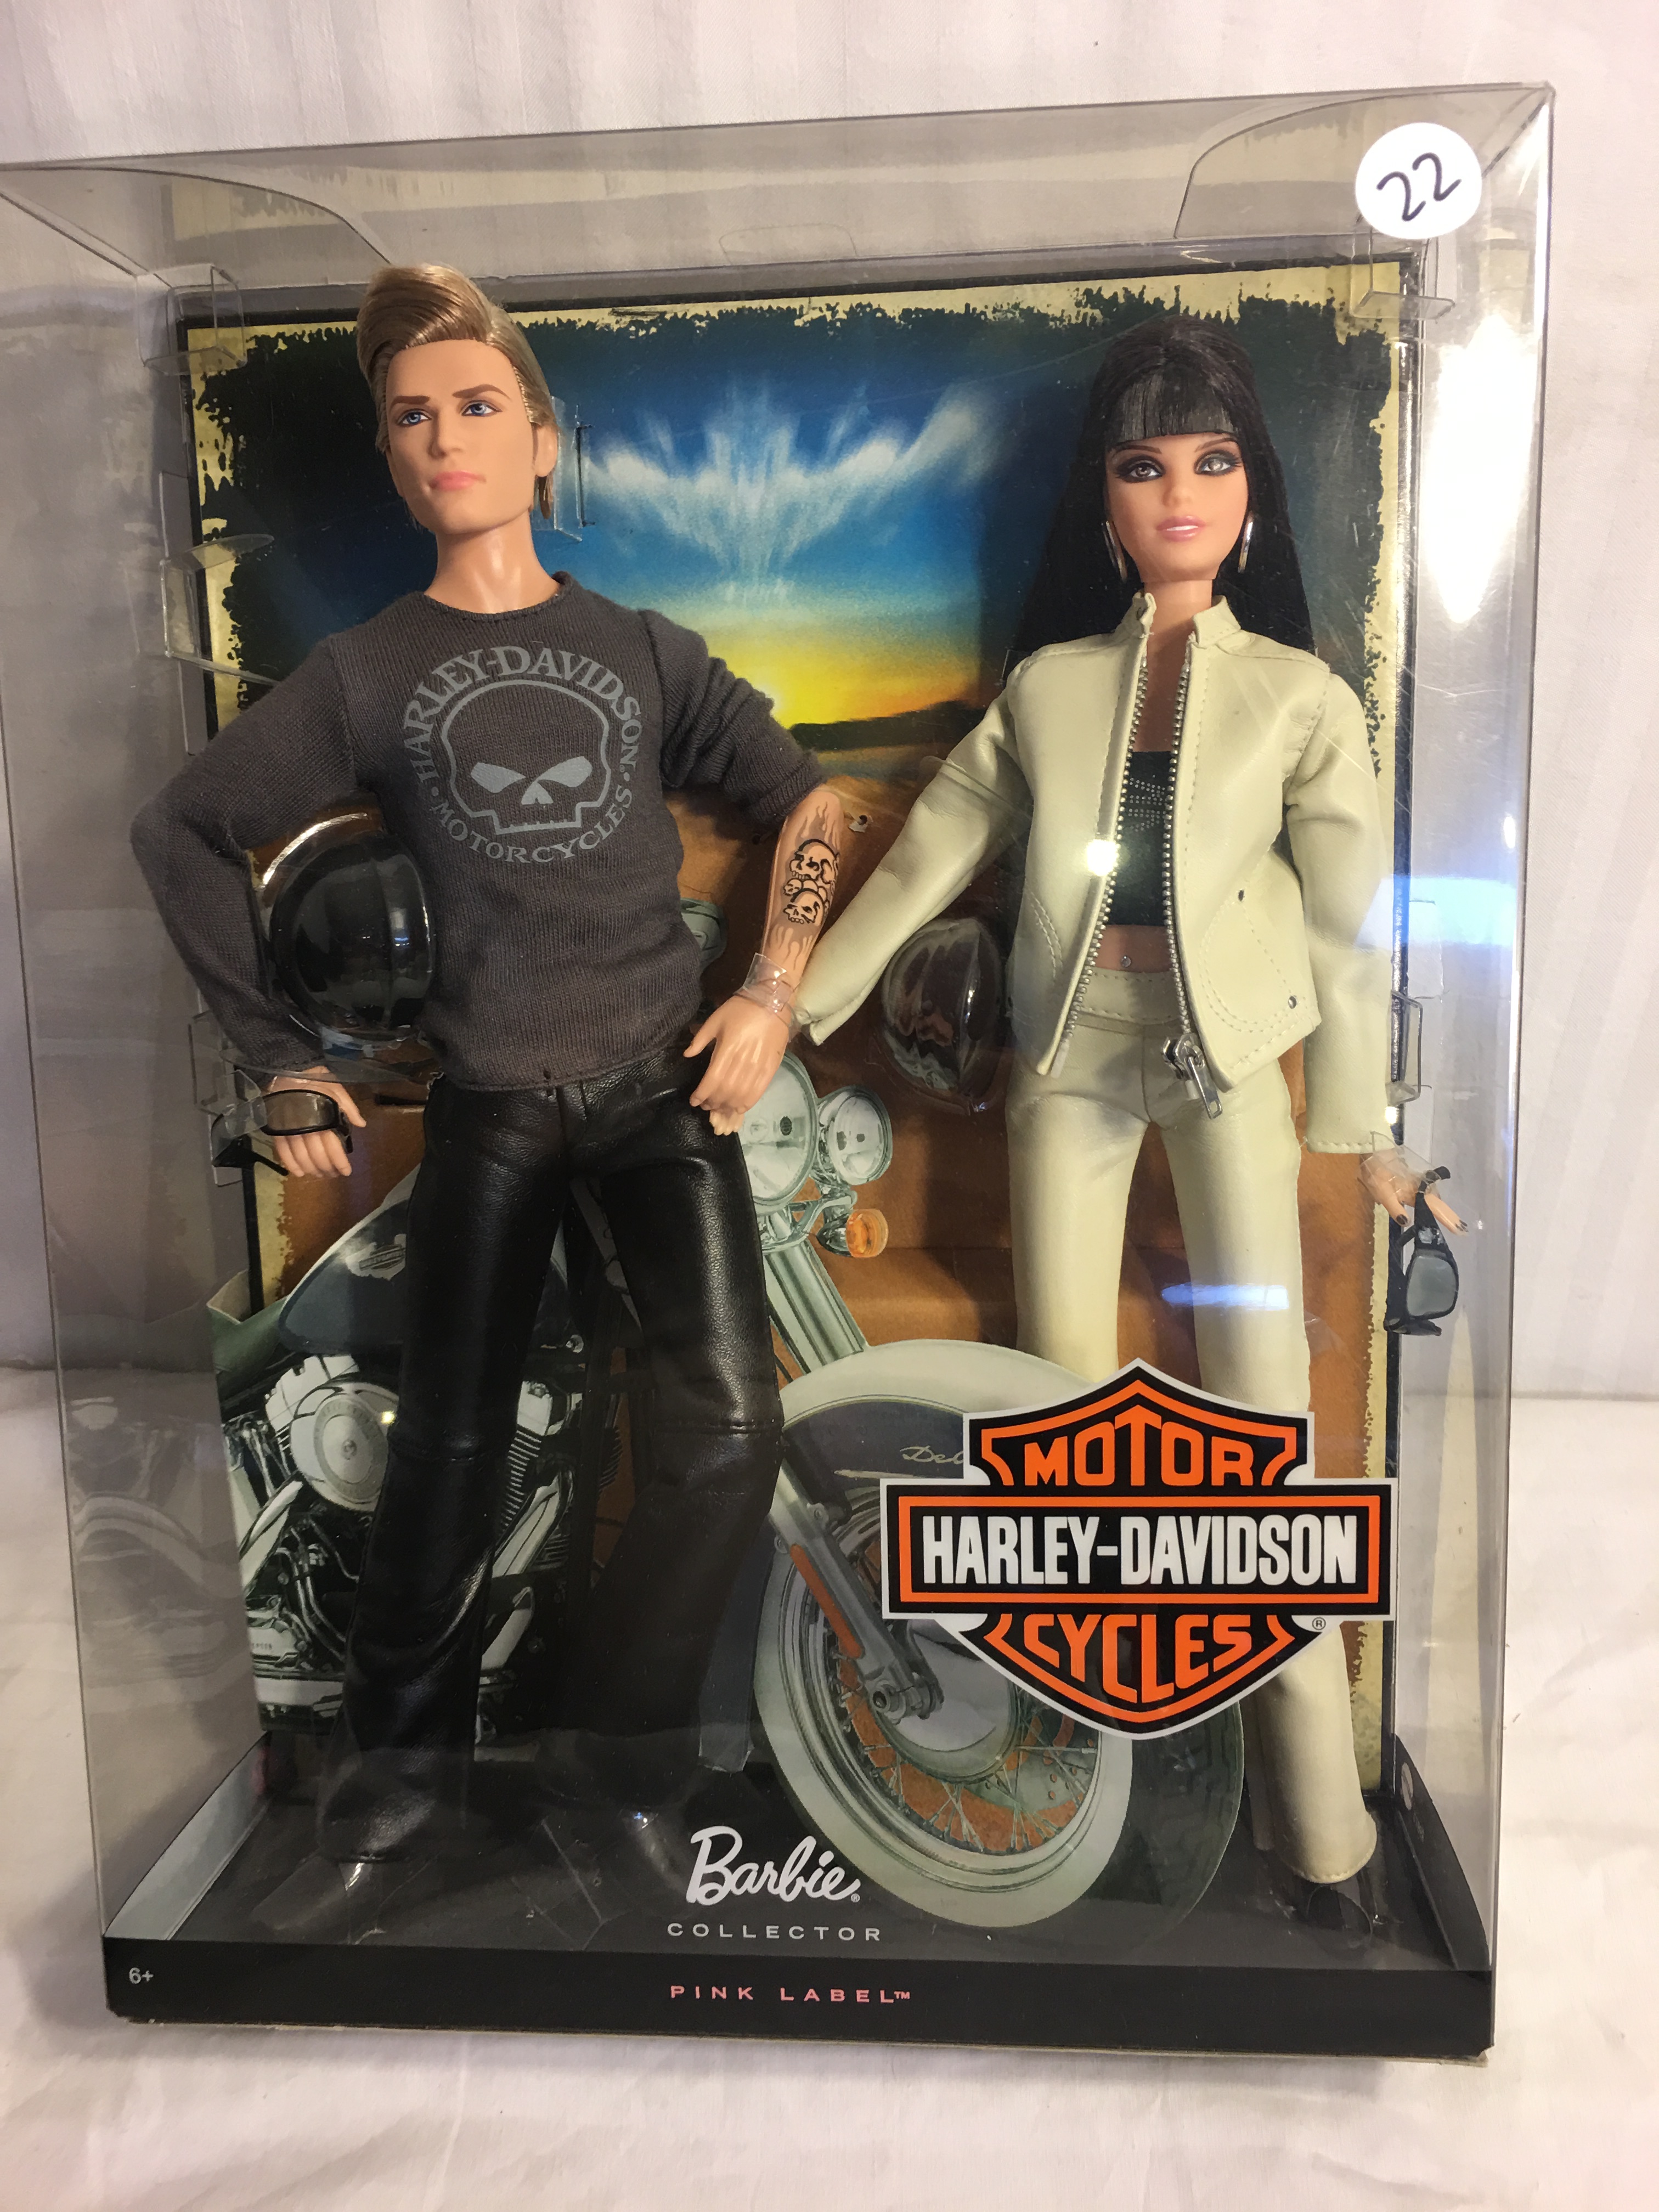 Barbie Collector Pink Label Harley-Davidson Motor Cycles Barbie & Ken Doll  Set